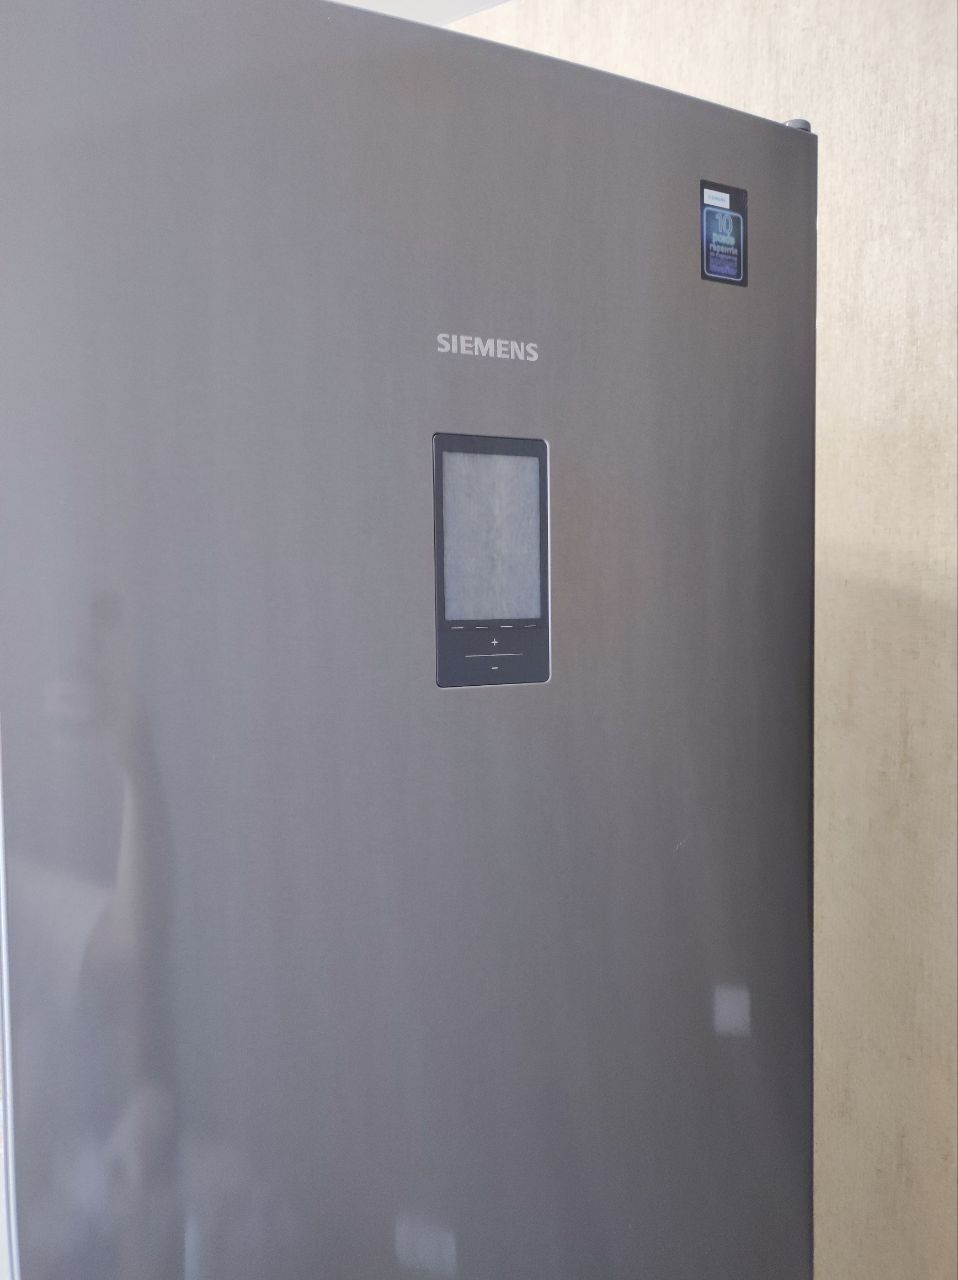 Продам холодильник Siemens